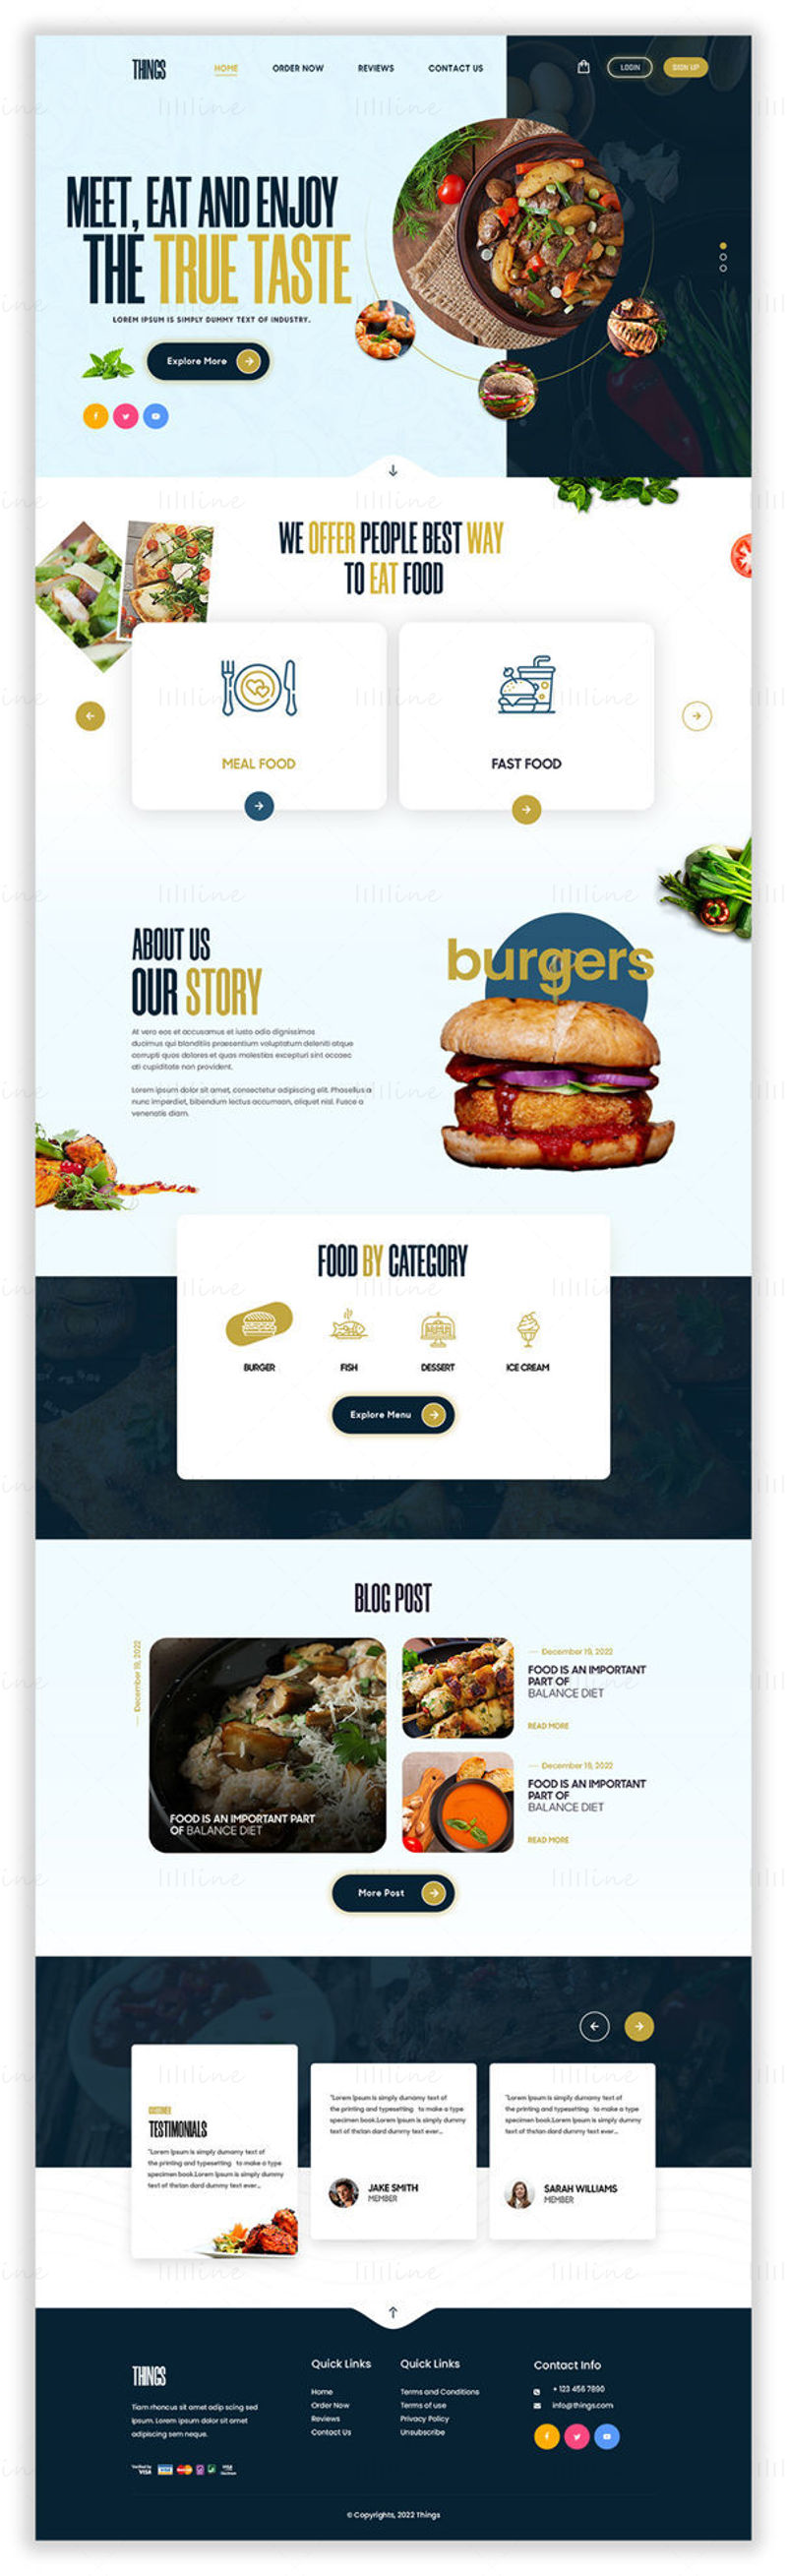 قالب غذای Things - UI Adobe Photoshop